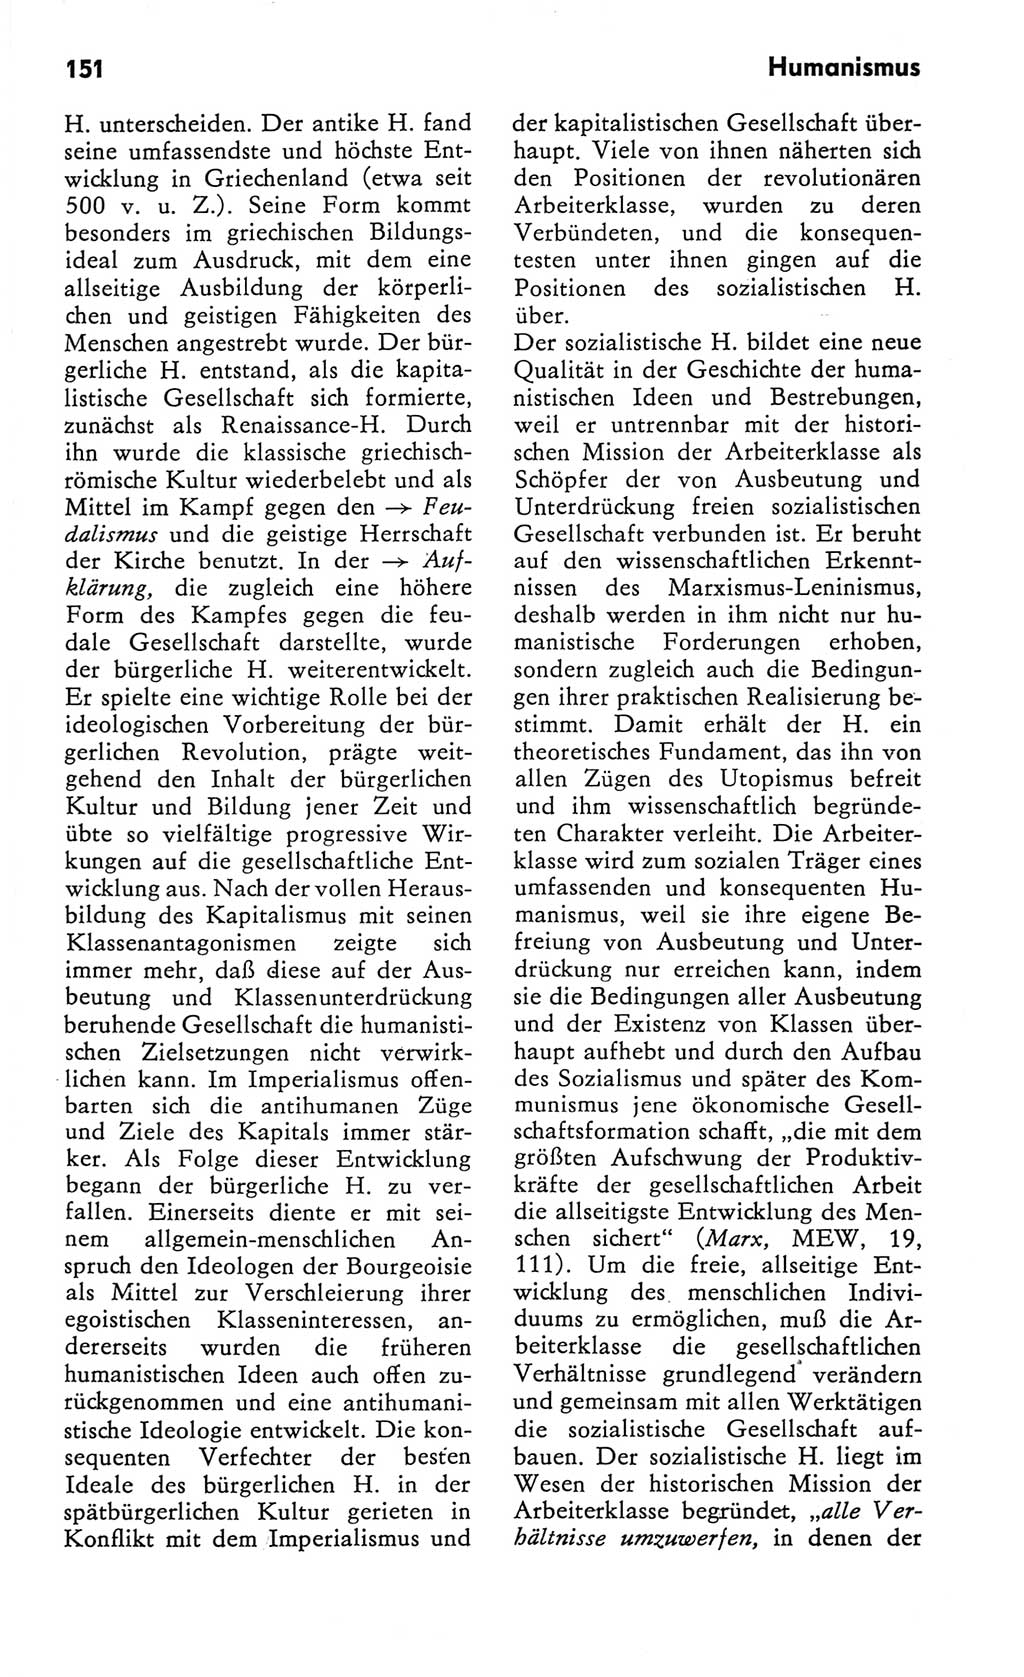 Kleines Wörterbuch der marxistisch-leninistischen Philosophie [Deutsche Demokratische Republik (DDR)] 1982, Seite 151 (Kl. Wb. ML Phil. DDR 1982, S. 151)